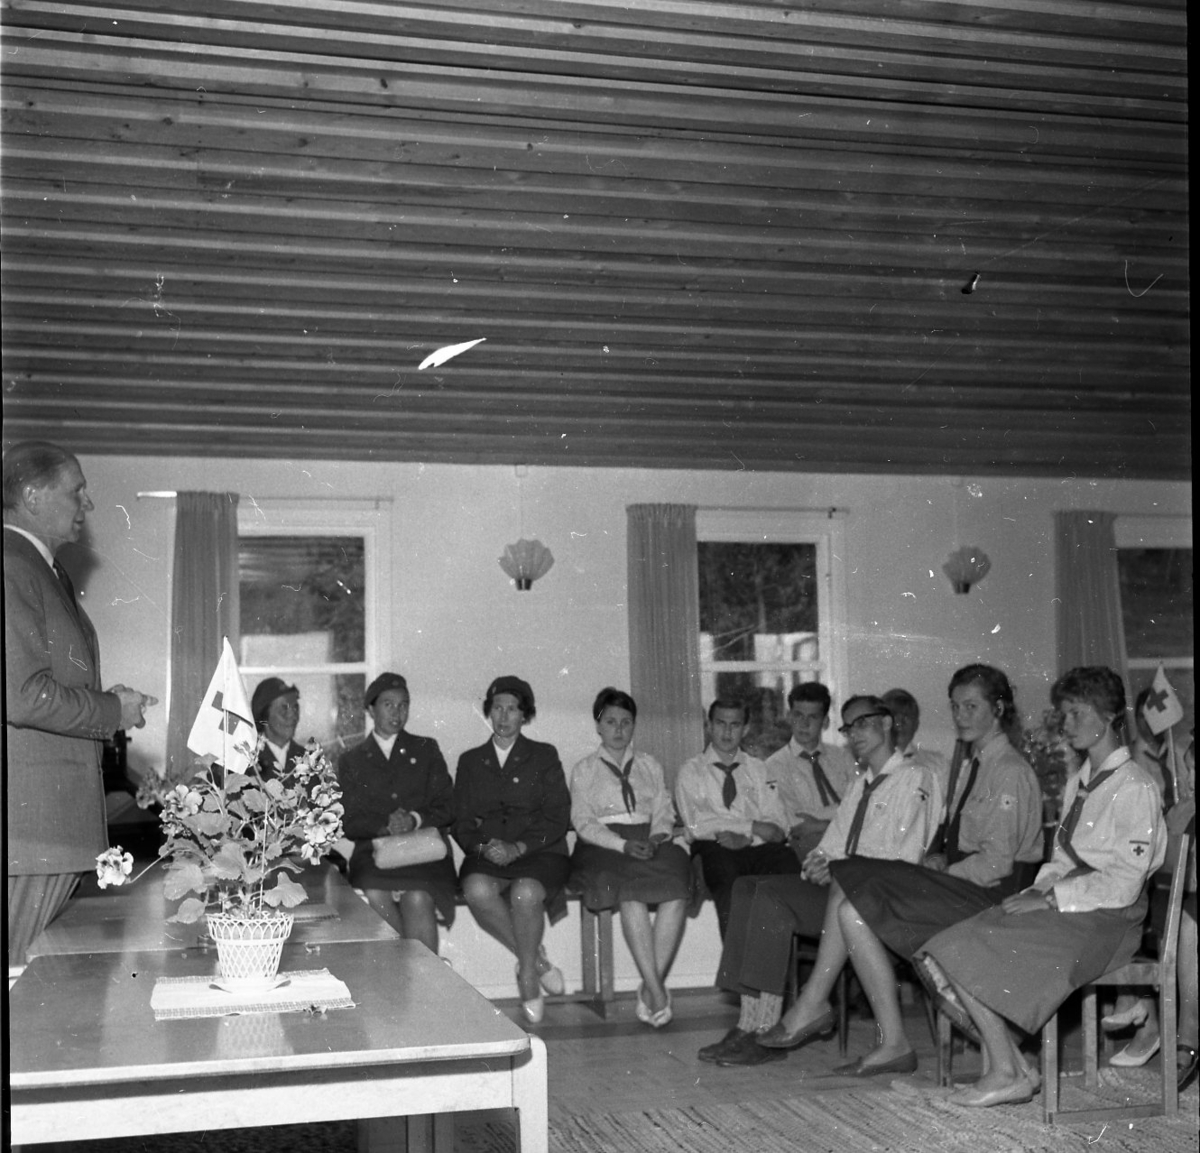 Röda korsläger i Ralingsås 1960-1961. Flera persoer i röda korsets kostymer sitter och lyssnar på en manlig talare. På ett bord står en krukväxt med en röda korset-flagga nedstucken.